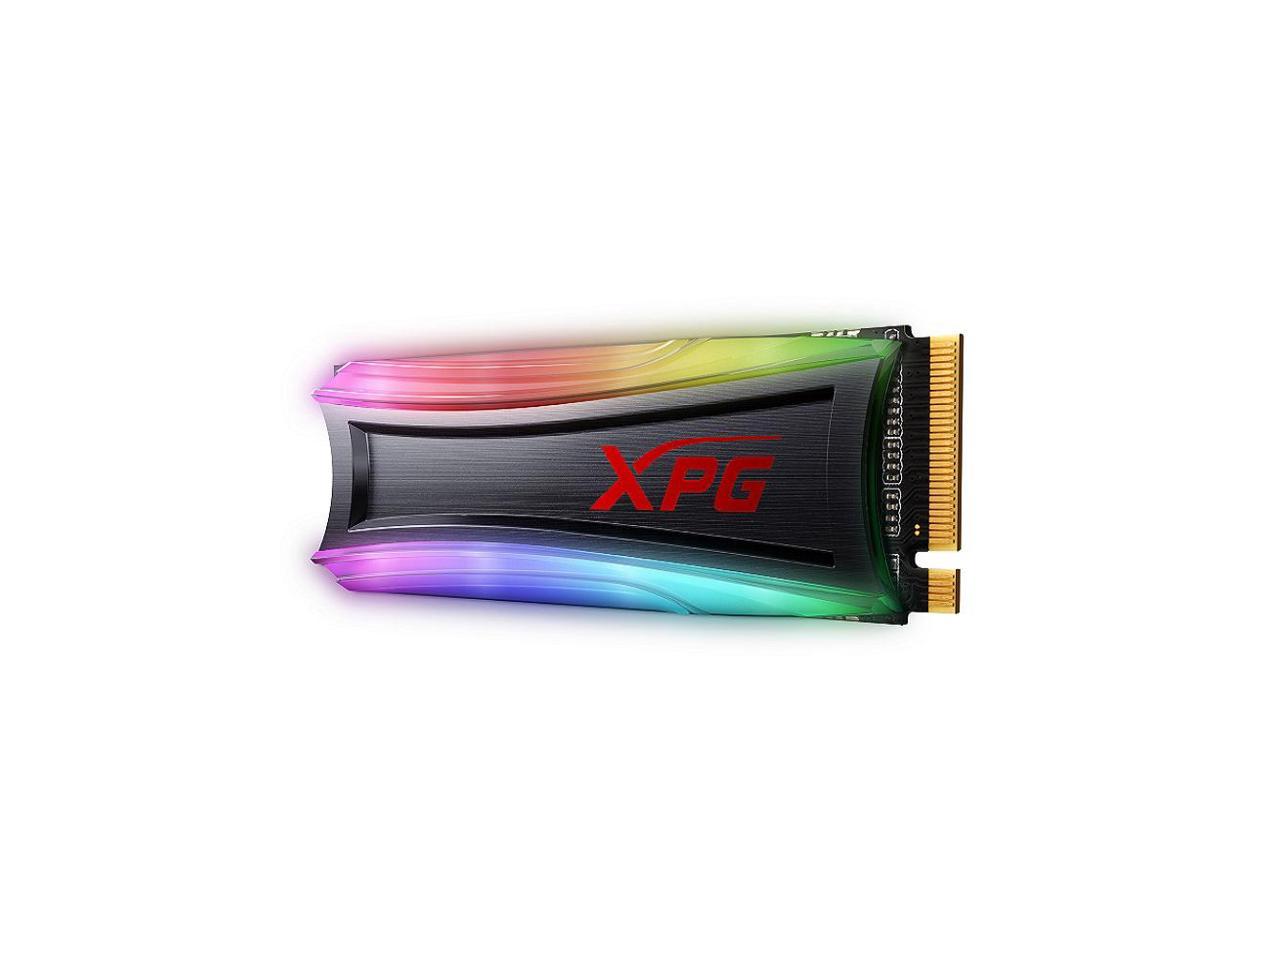 Adata XPG SSD